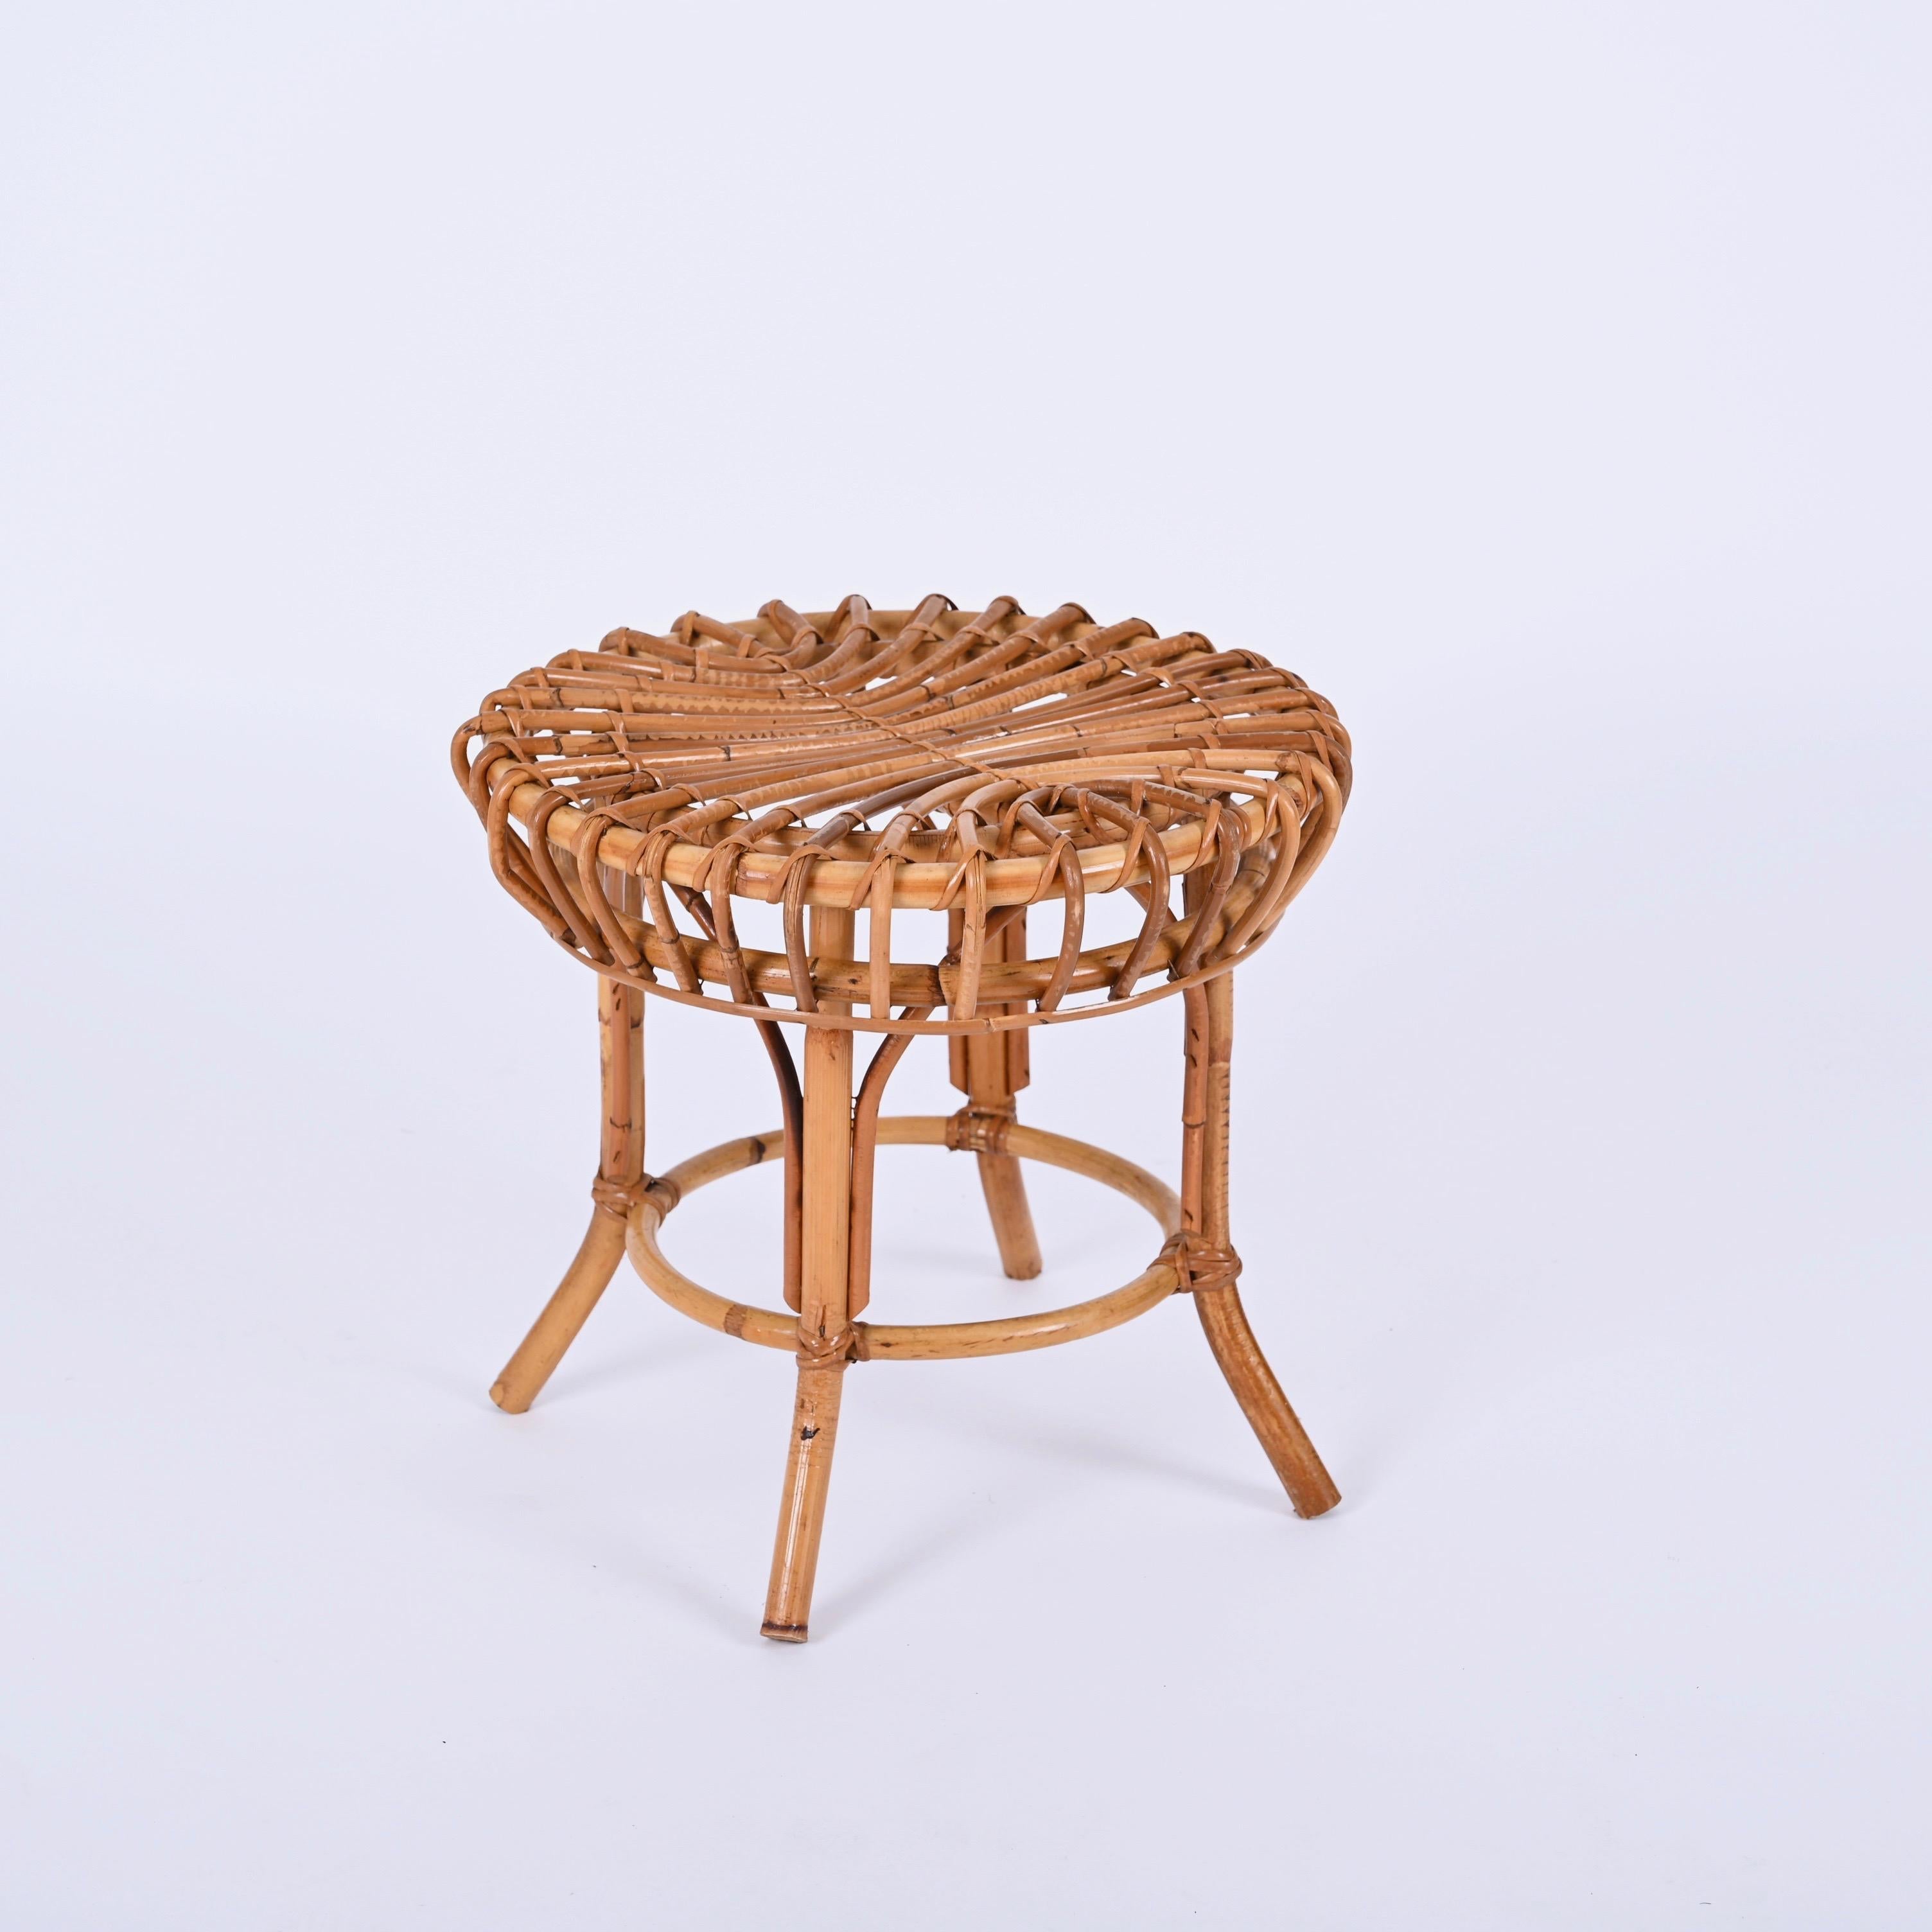 Magnifique tabouret rond en bambou et osier datant du milieu du siècle dernier. Franco Albini a conçu cette pièce en Italie dans les années 1960.

Le pouf présente une belle combinaison de bambou courbé, de rotin et d'osier. Entièrement fabriqué à